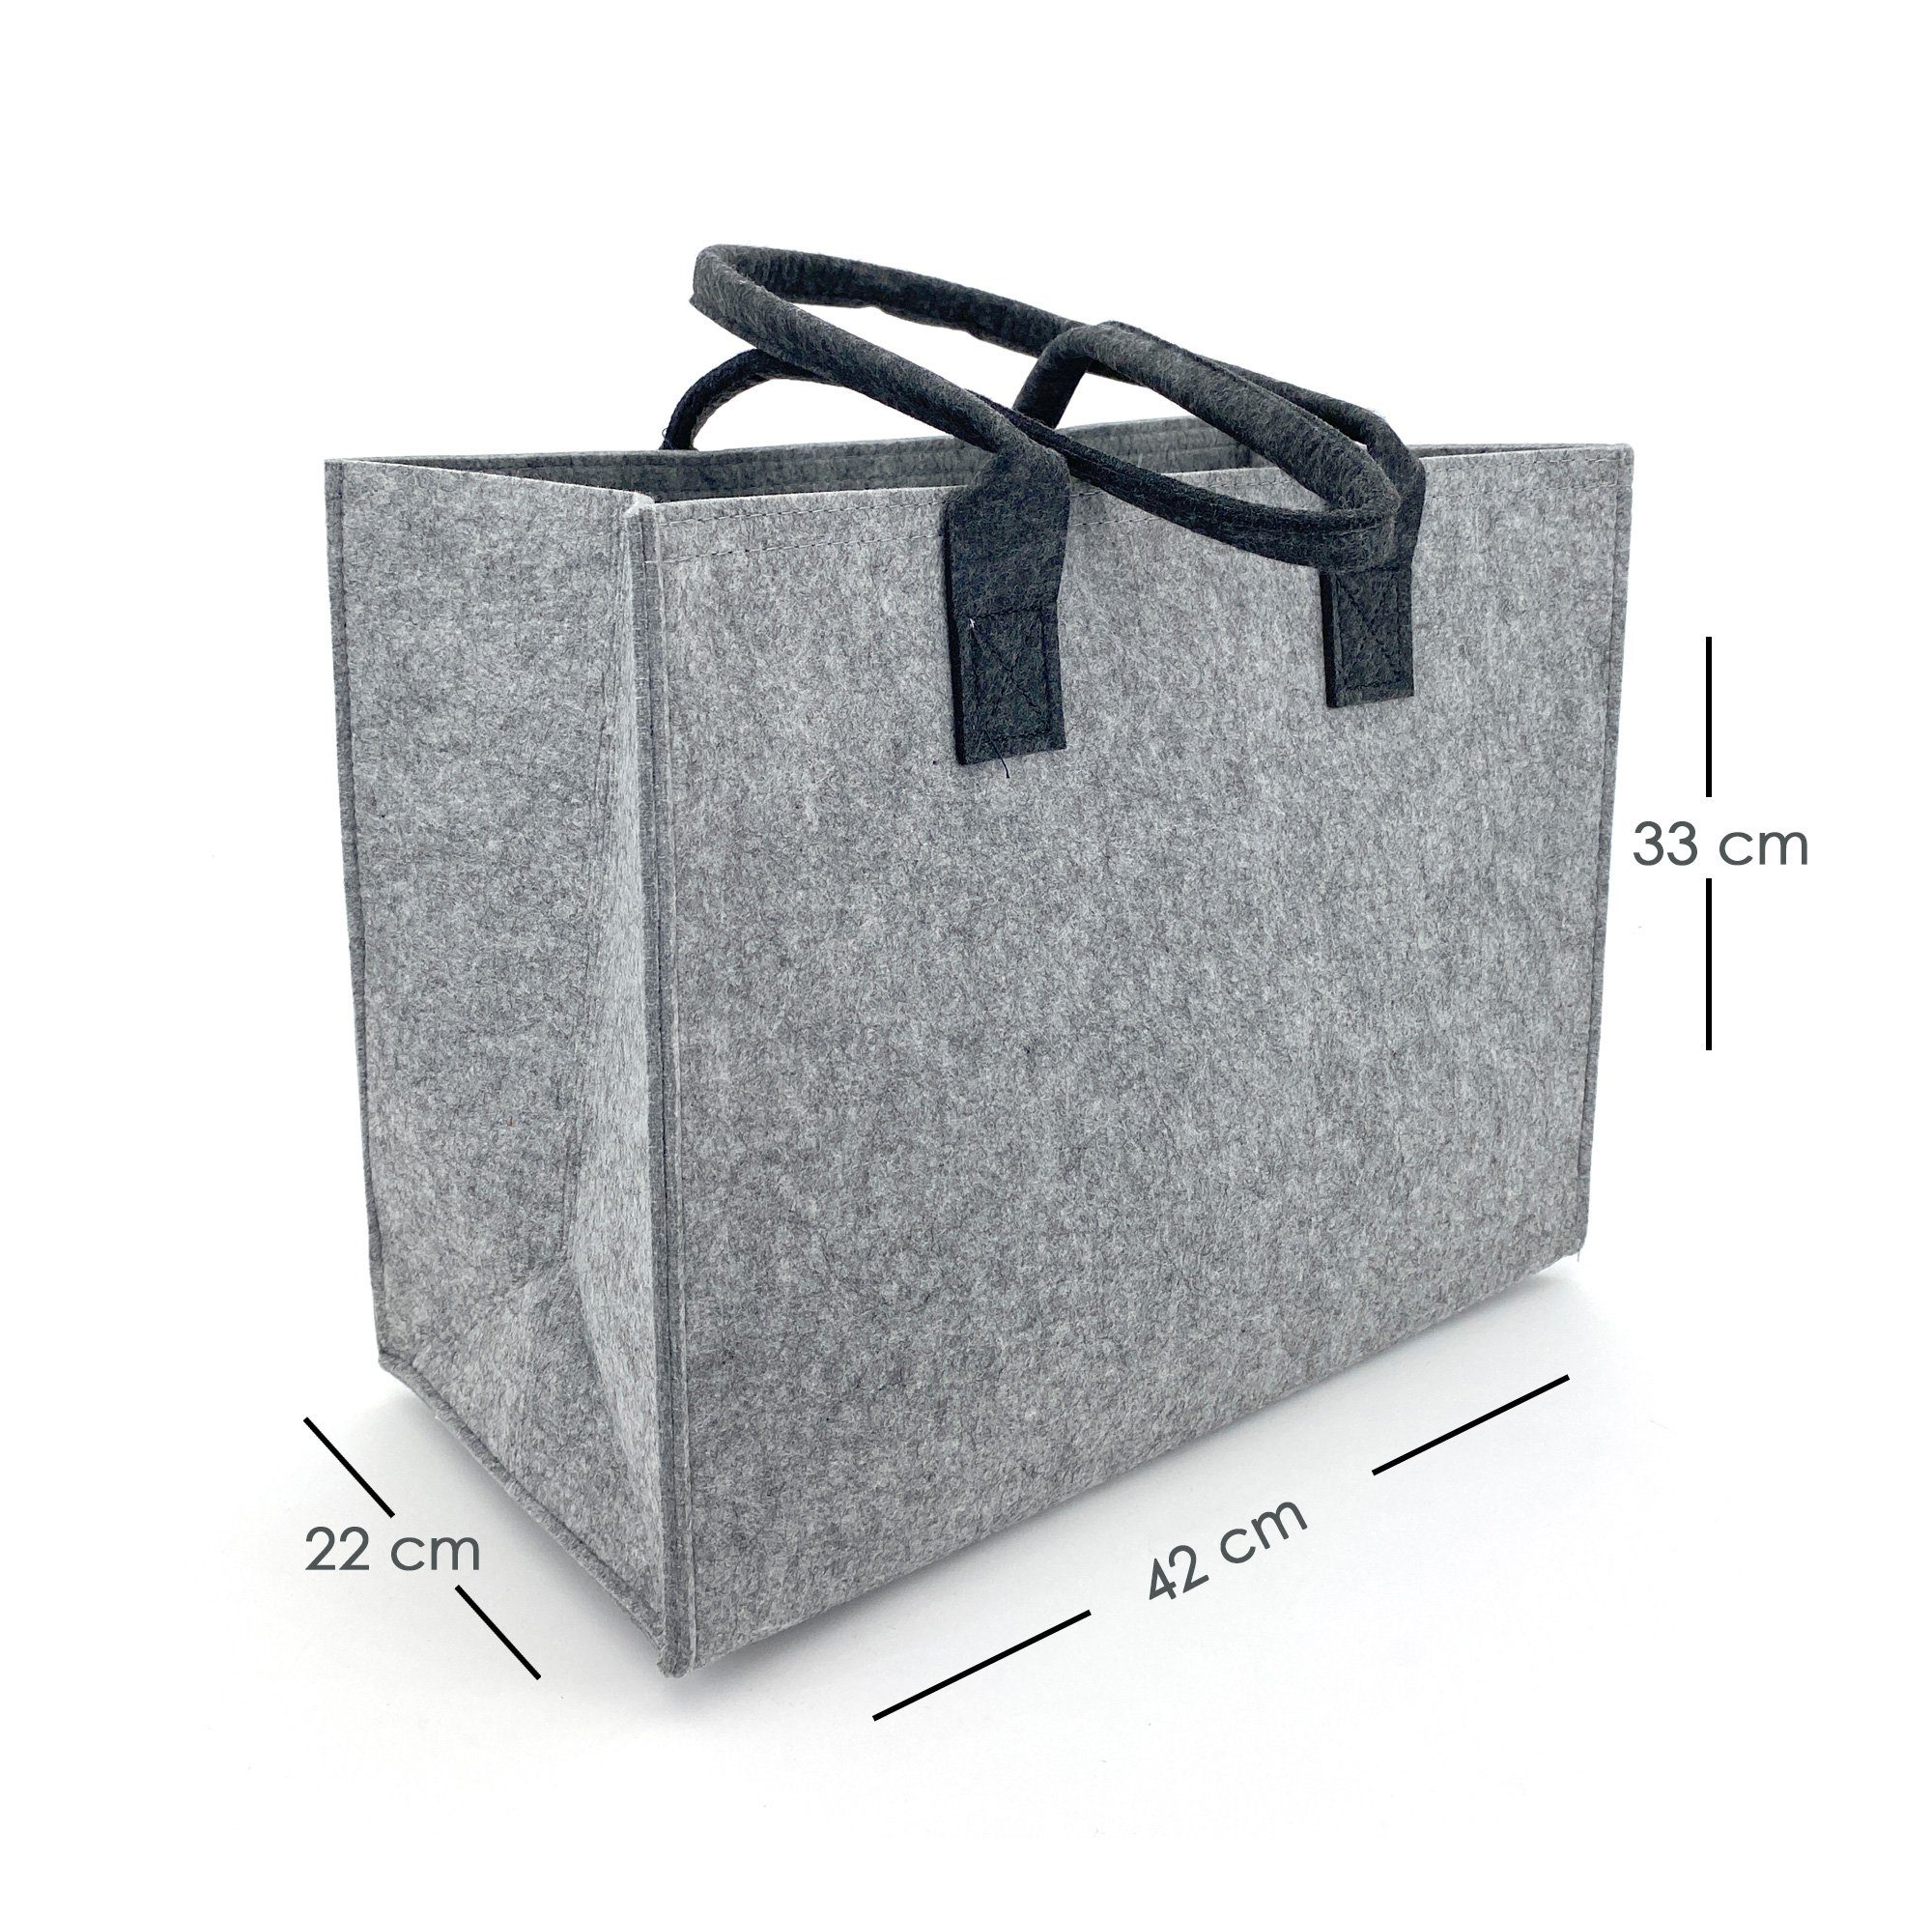 Filz-lounge-tasche mit klettverschluss, Filzbeutel, Einkaufstaschen